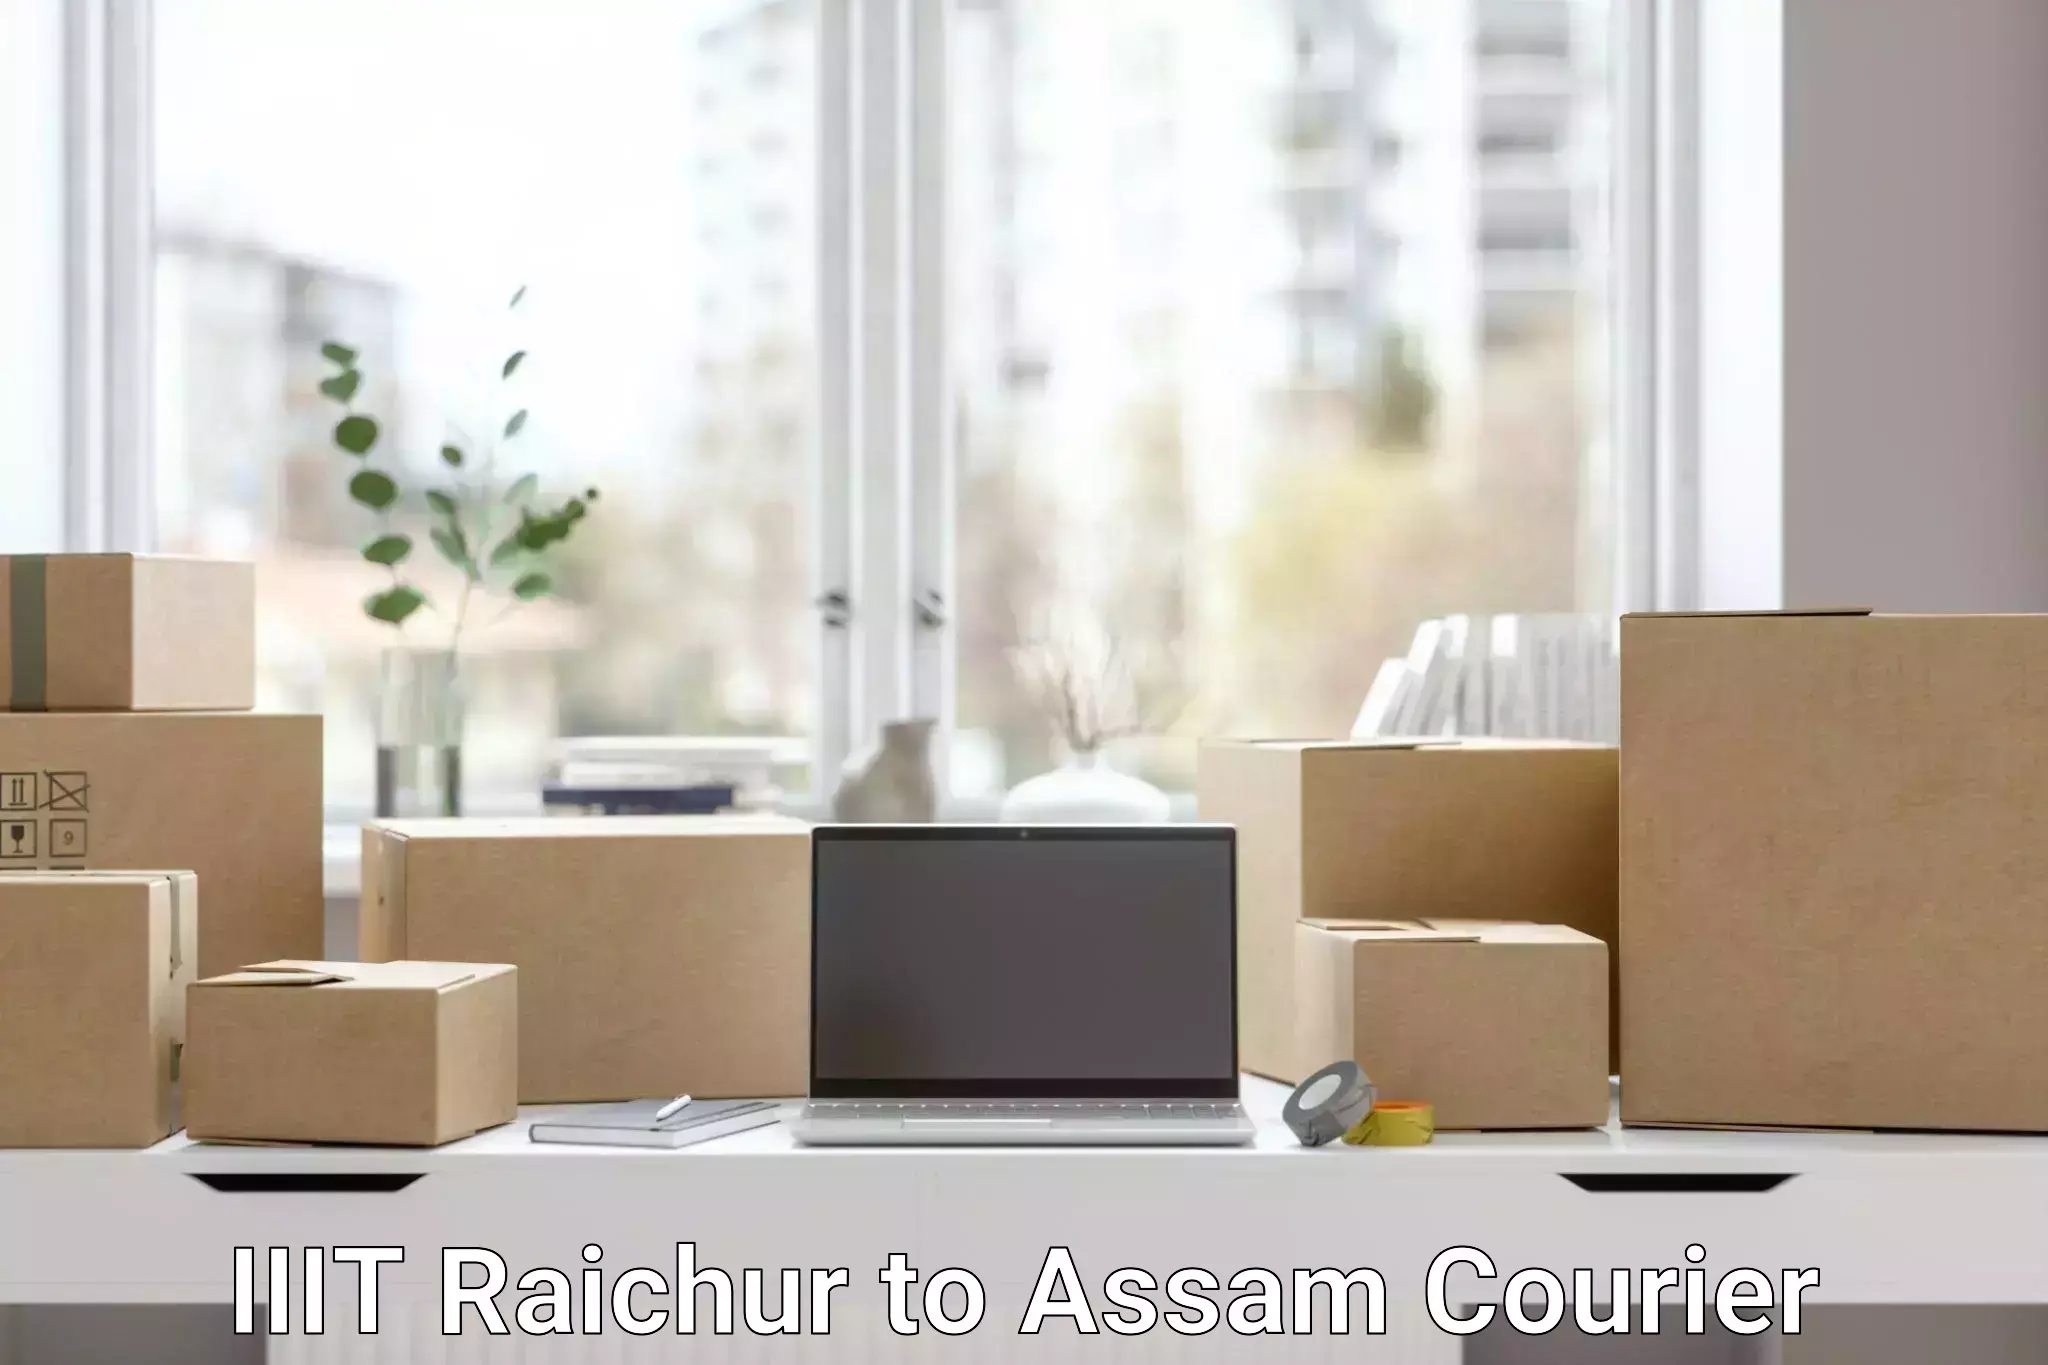 Urgent courier needs IIIT Raichur to Dergaon